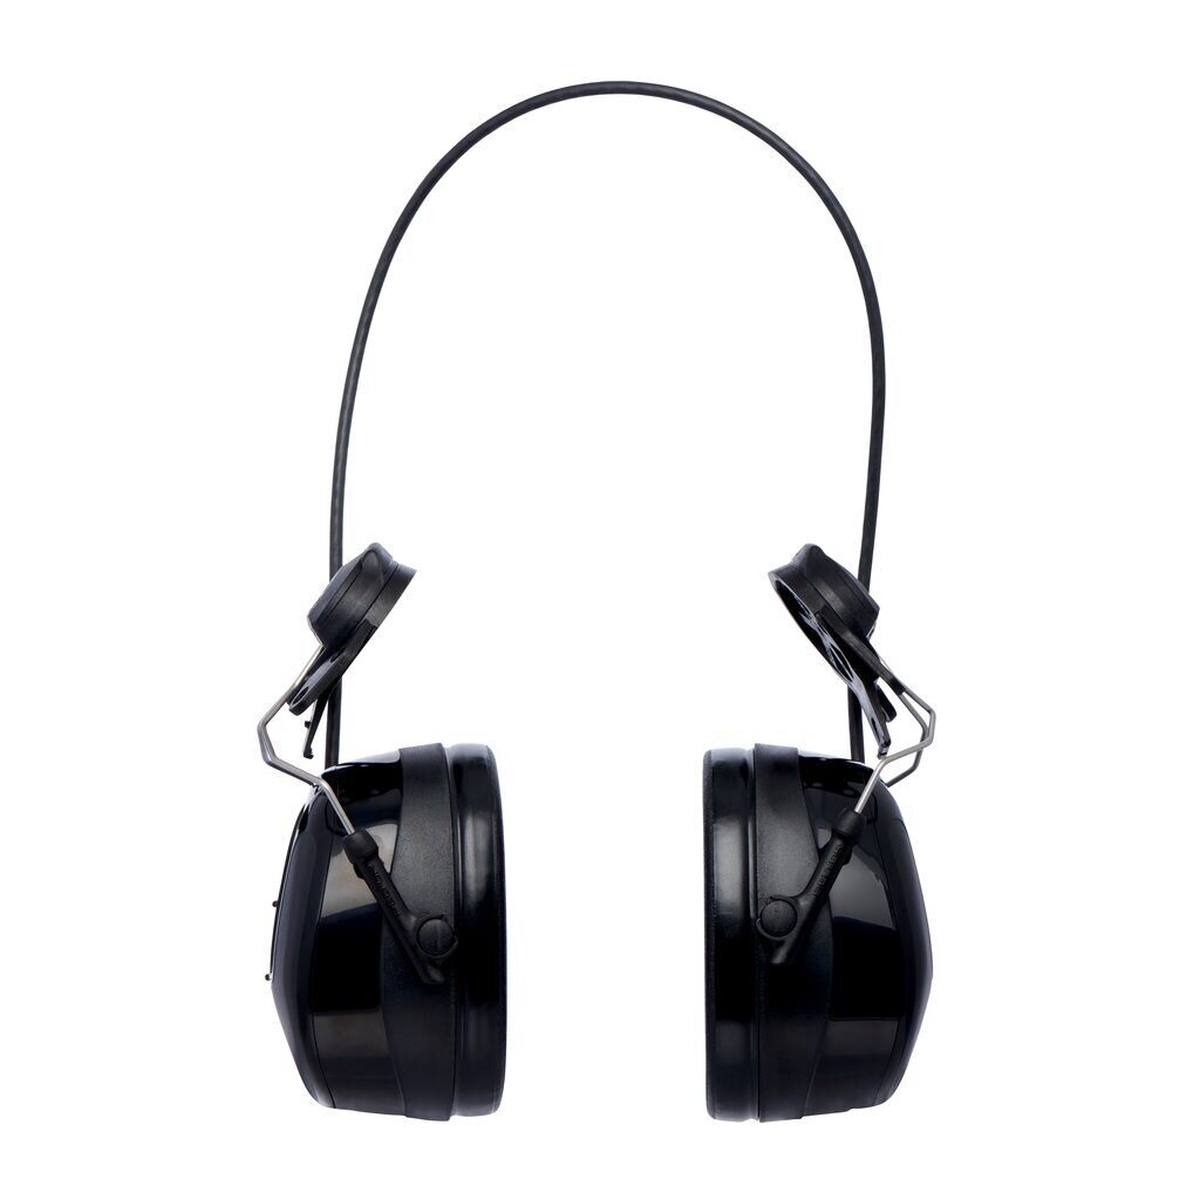 3M Peltor WorkTunes Pro FM-radio kuulonsuojaimet, kypäräkiinnitys, musta